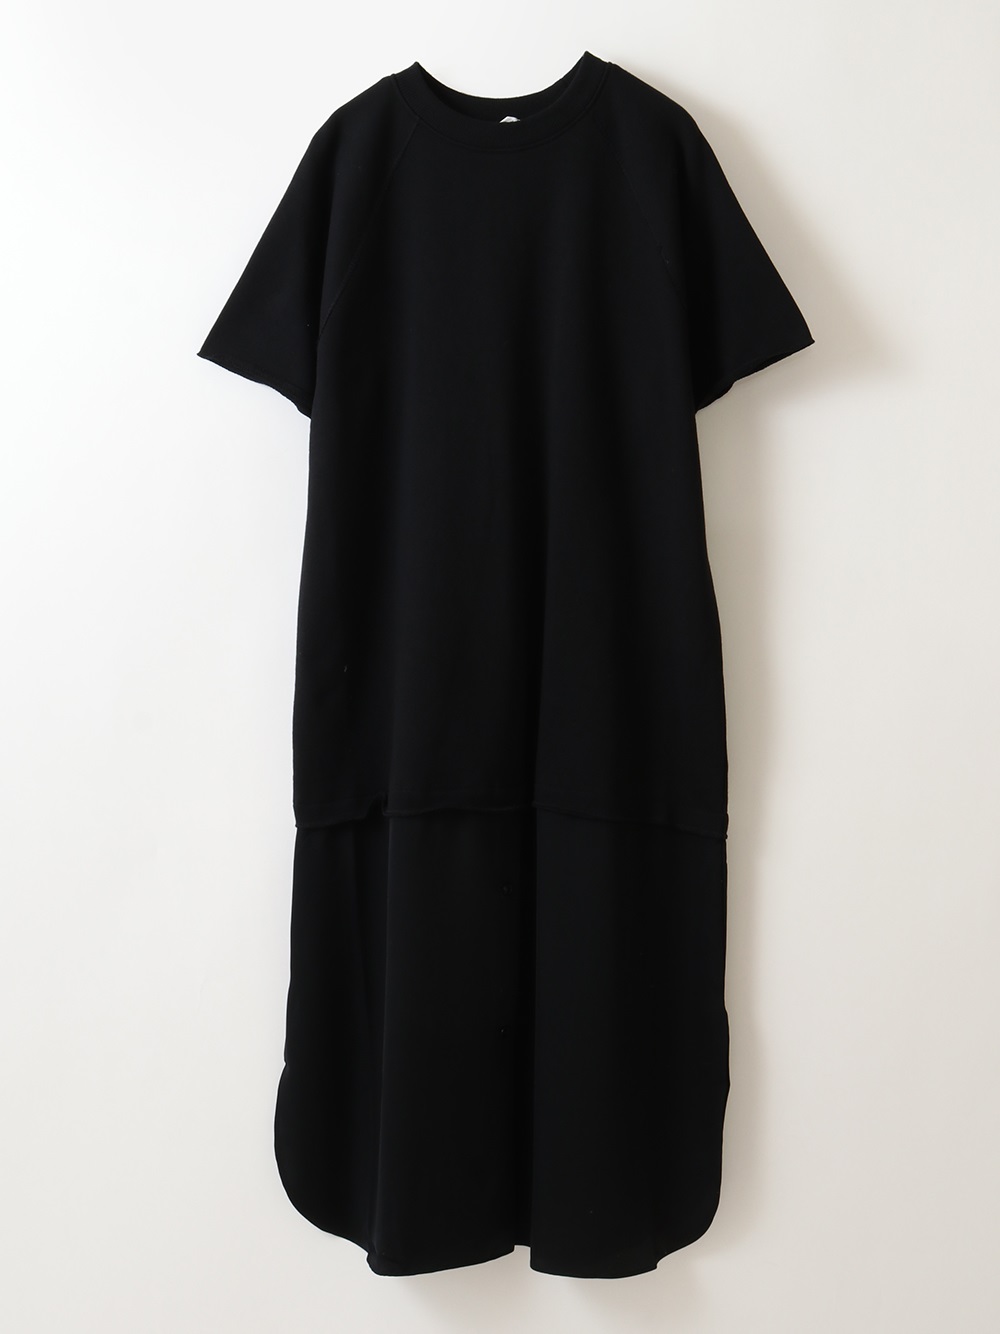 Combination Dress(00ブラック-フリー)